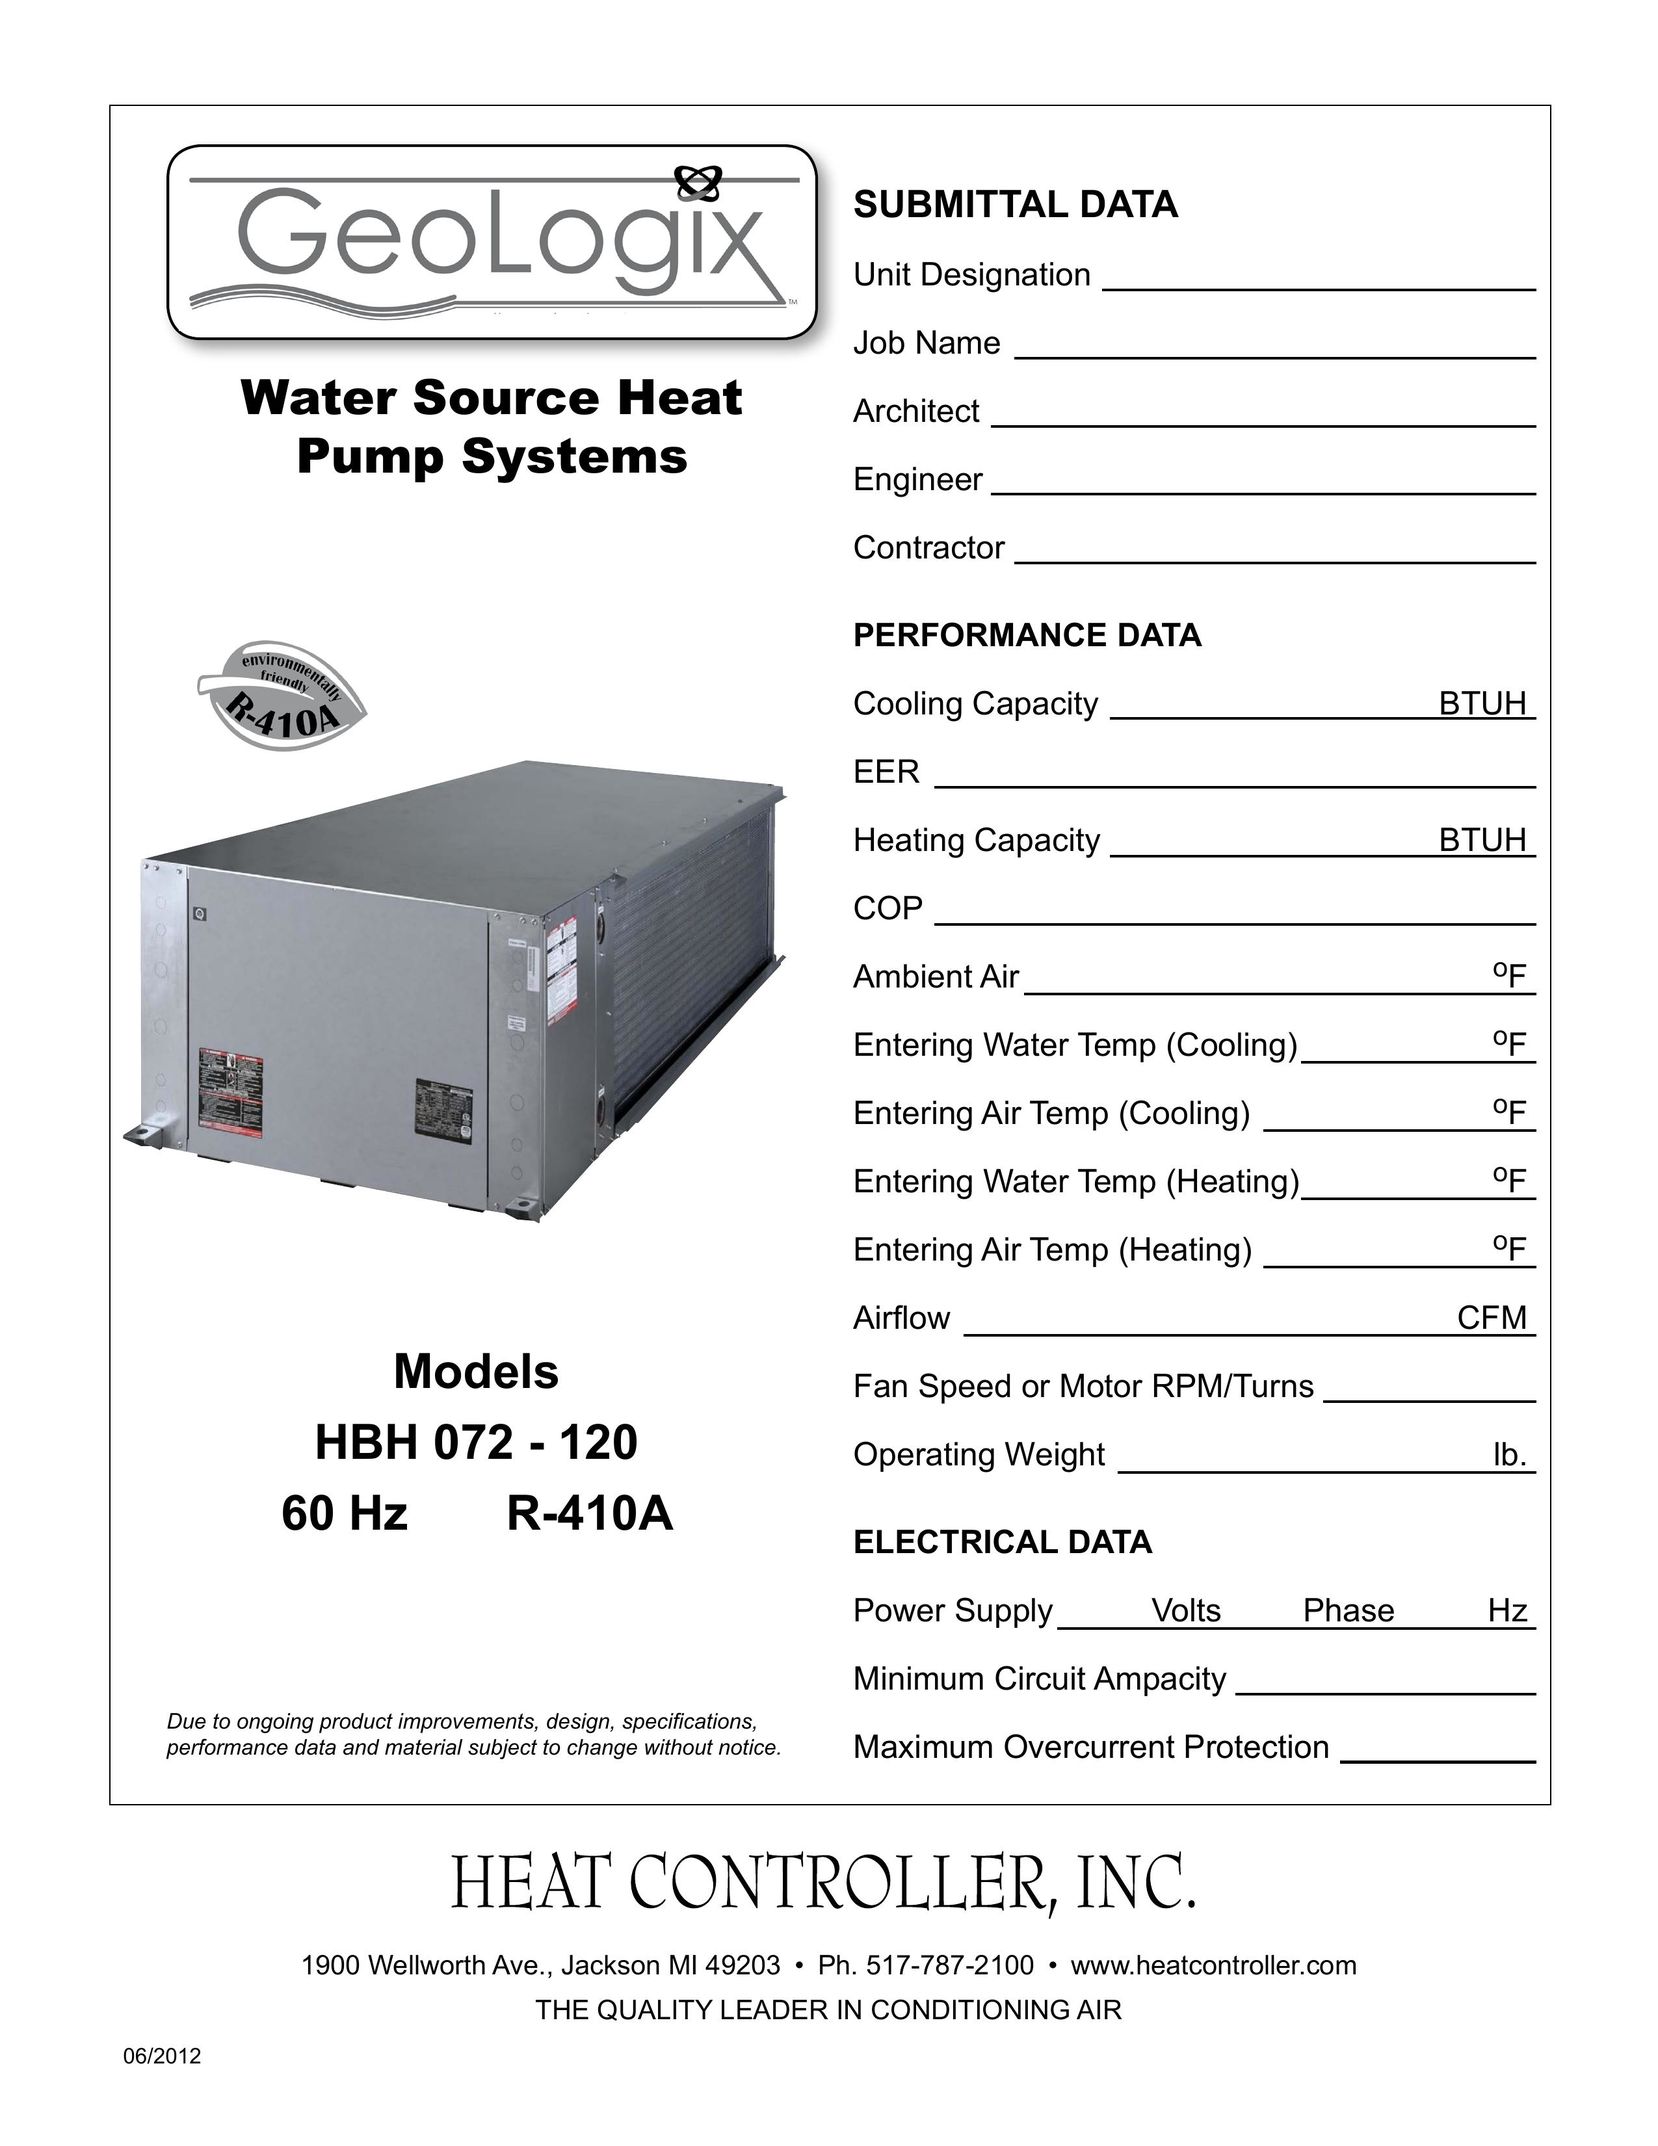 Heat Controller 60 HZR-410A Heat Pump User Manual